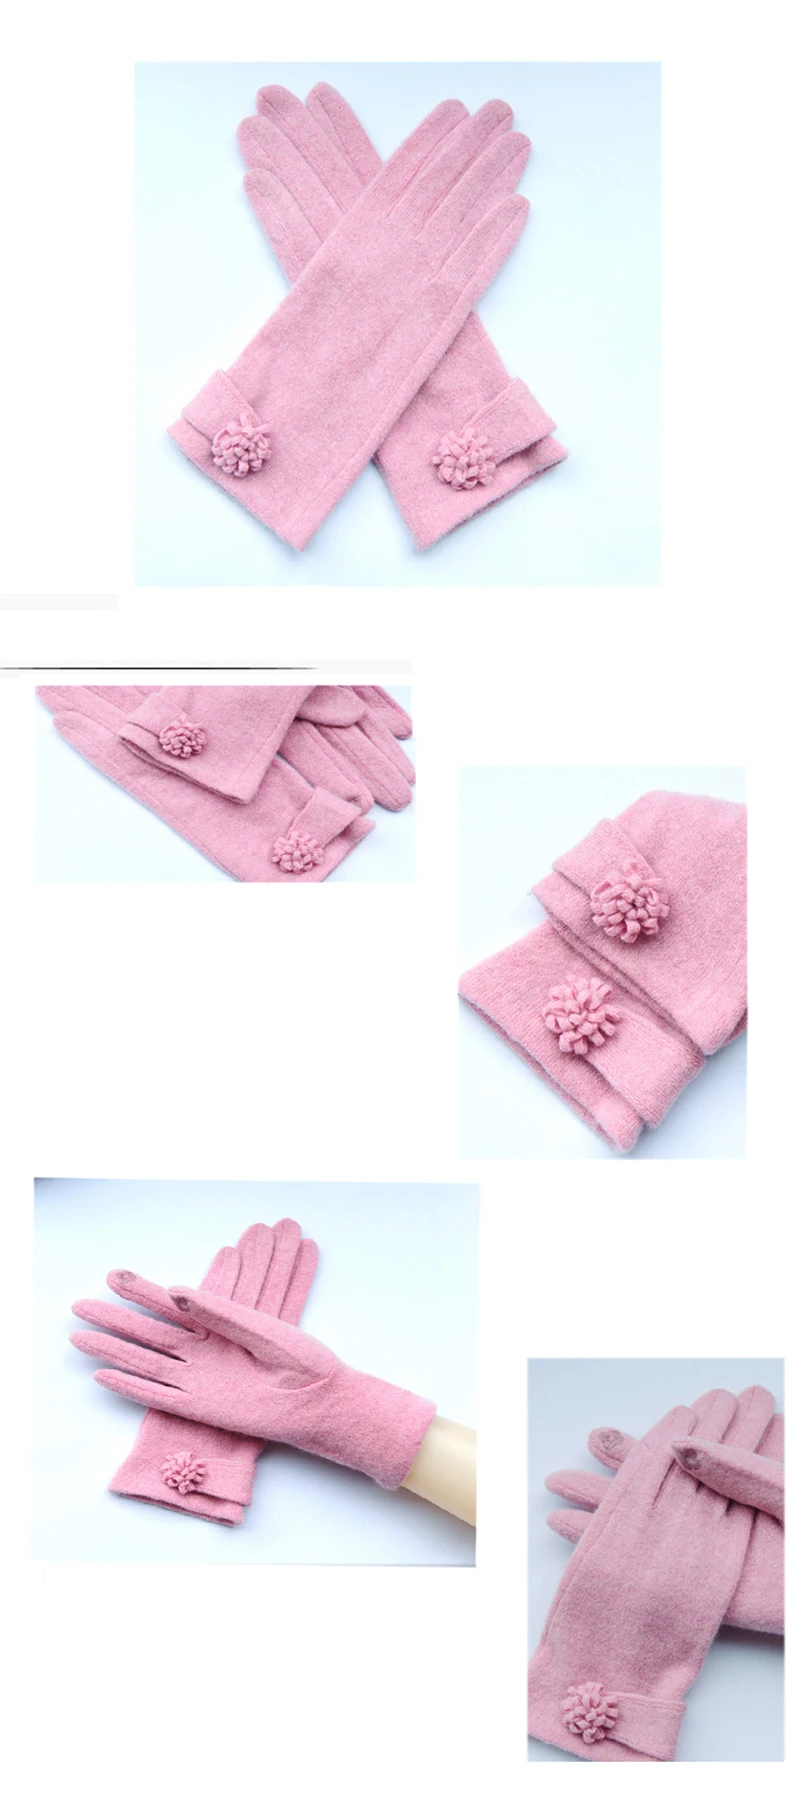 Новинка; сезон осень-зима; Модные женские кашемировые перчатки; женские шерстяные перчатки с цветочным узором; Универсальные женские бежевые перчатки